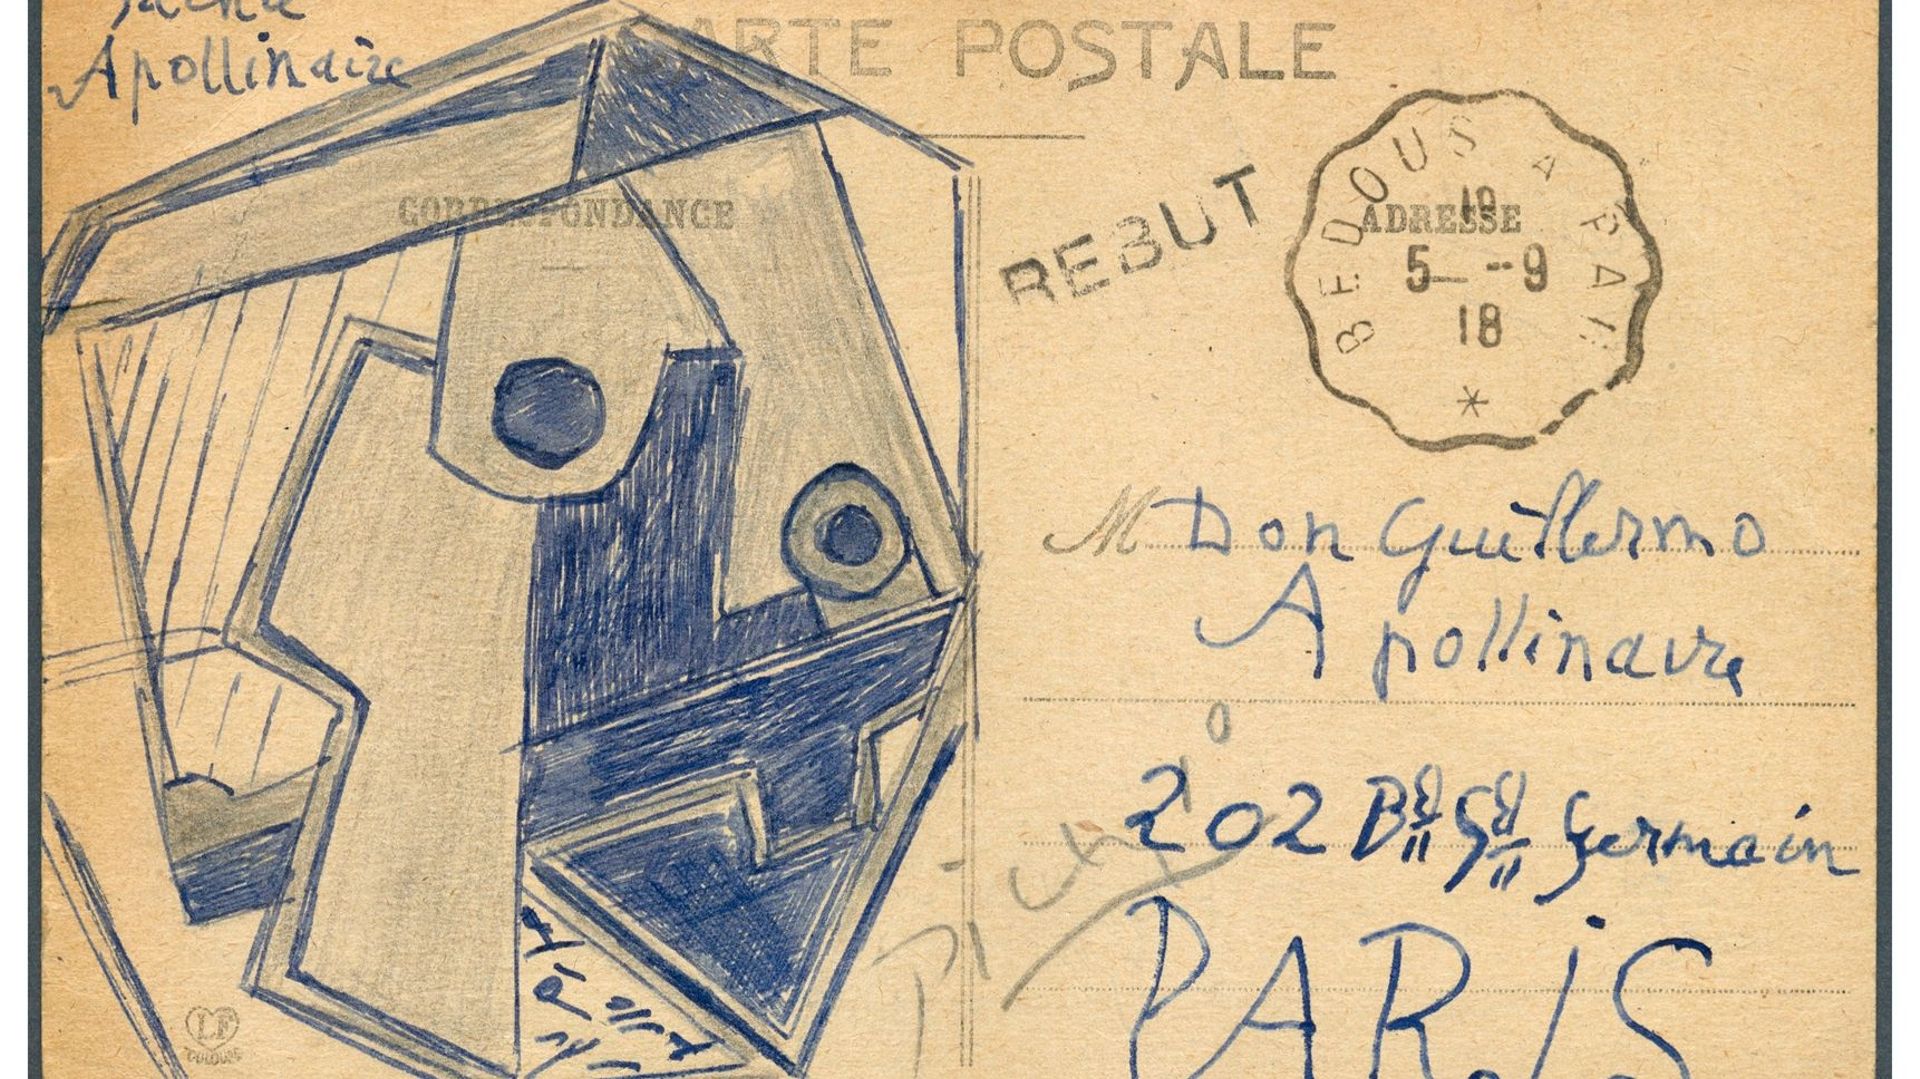 Une carte postale de Picasso vendue aux enchères pour 166.000 euros